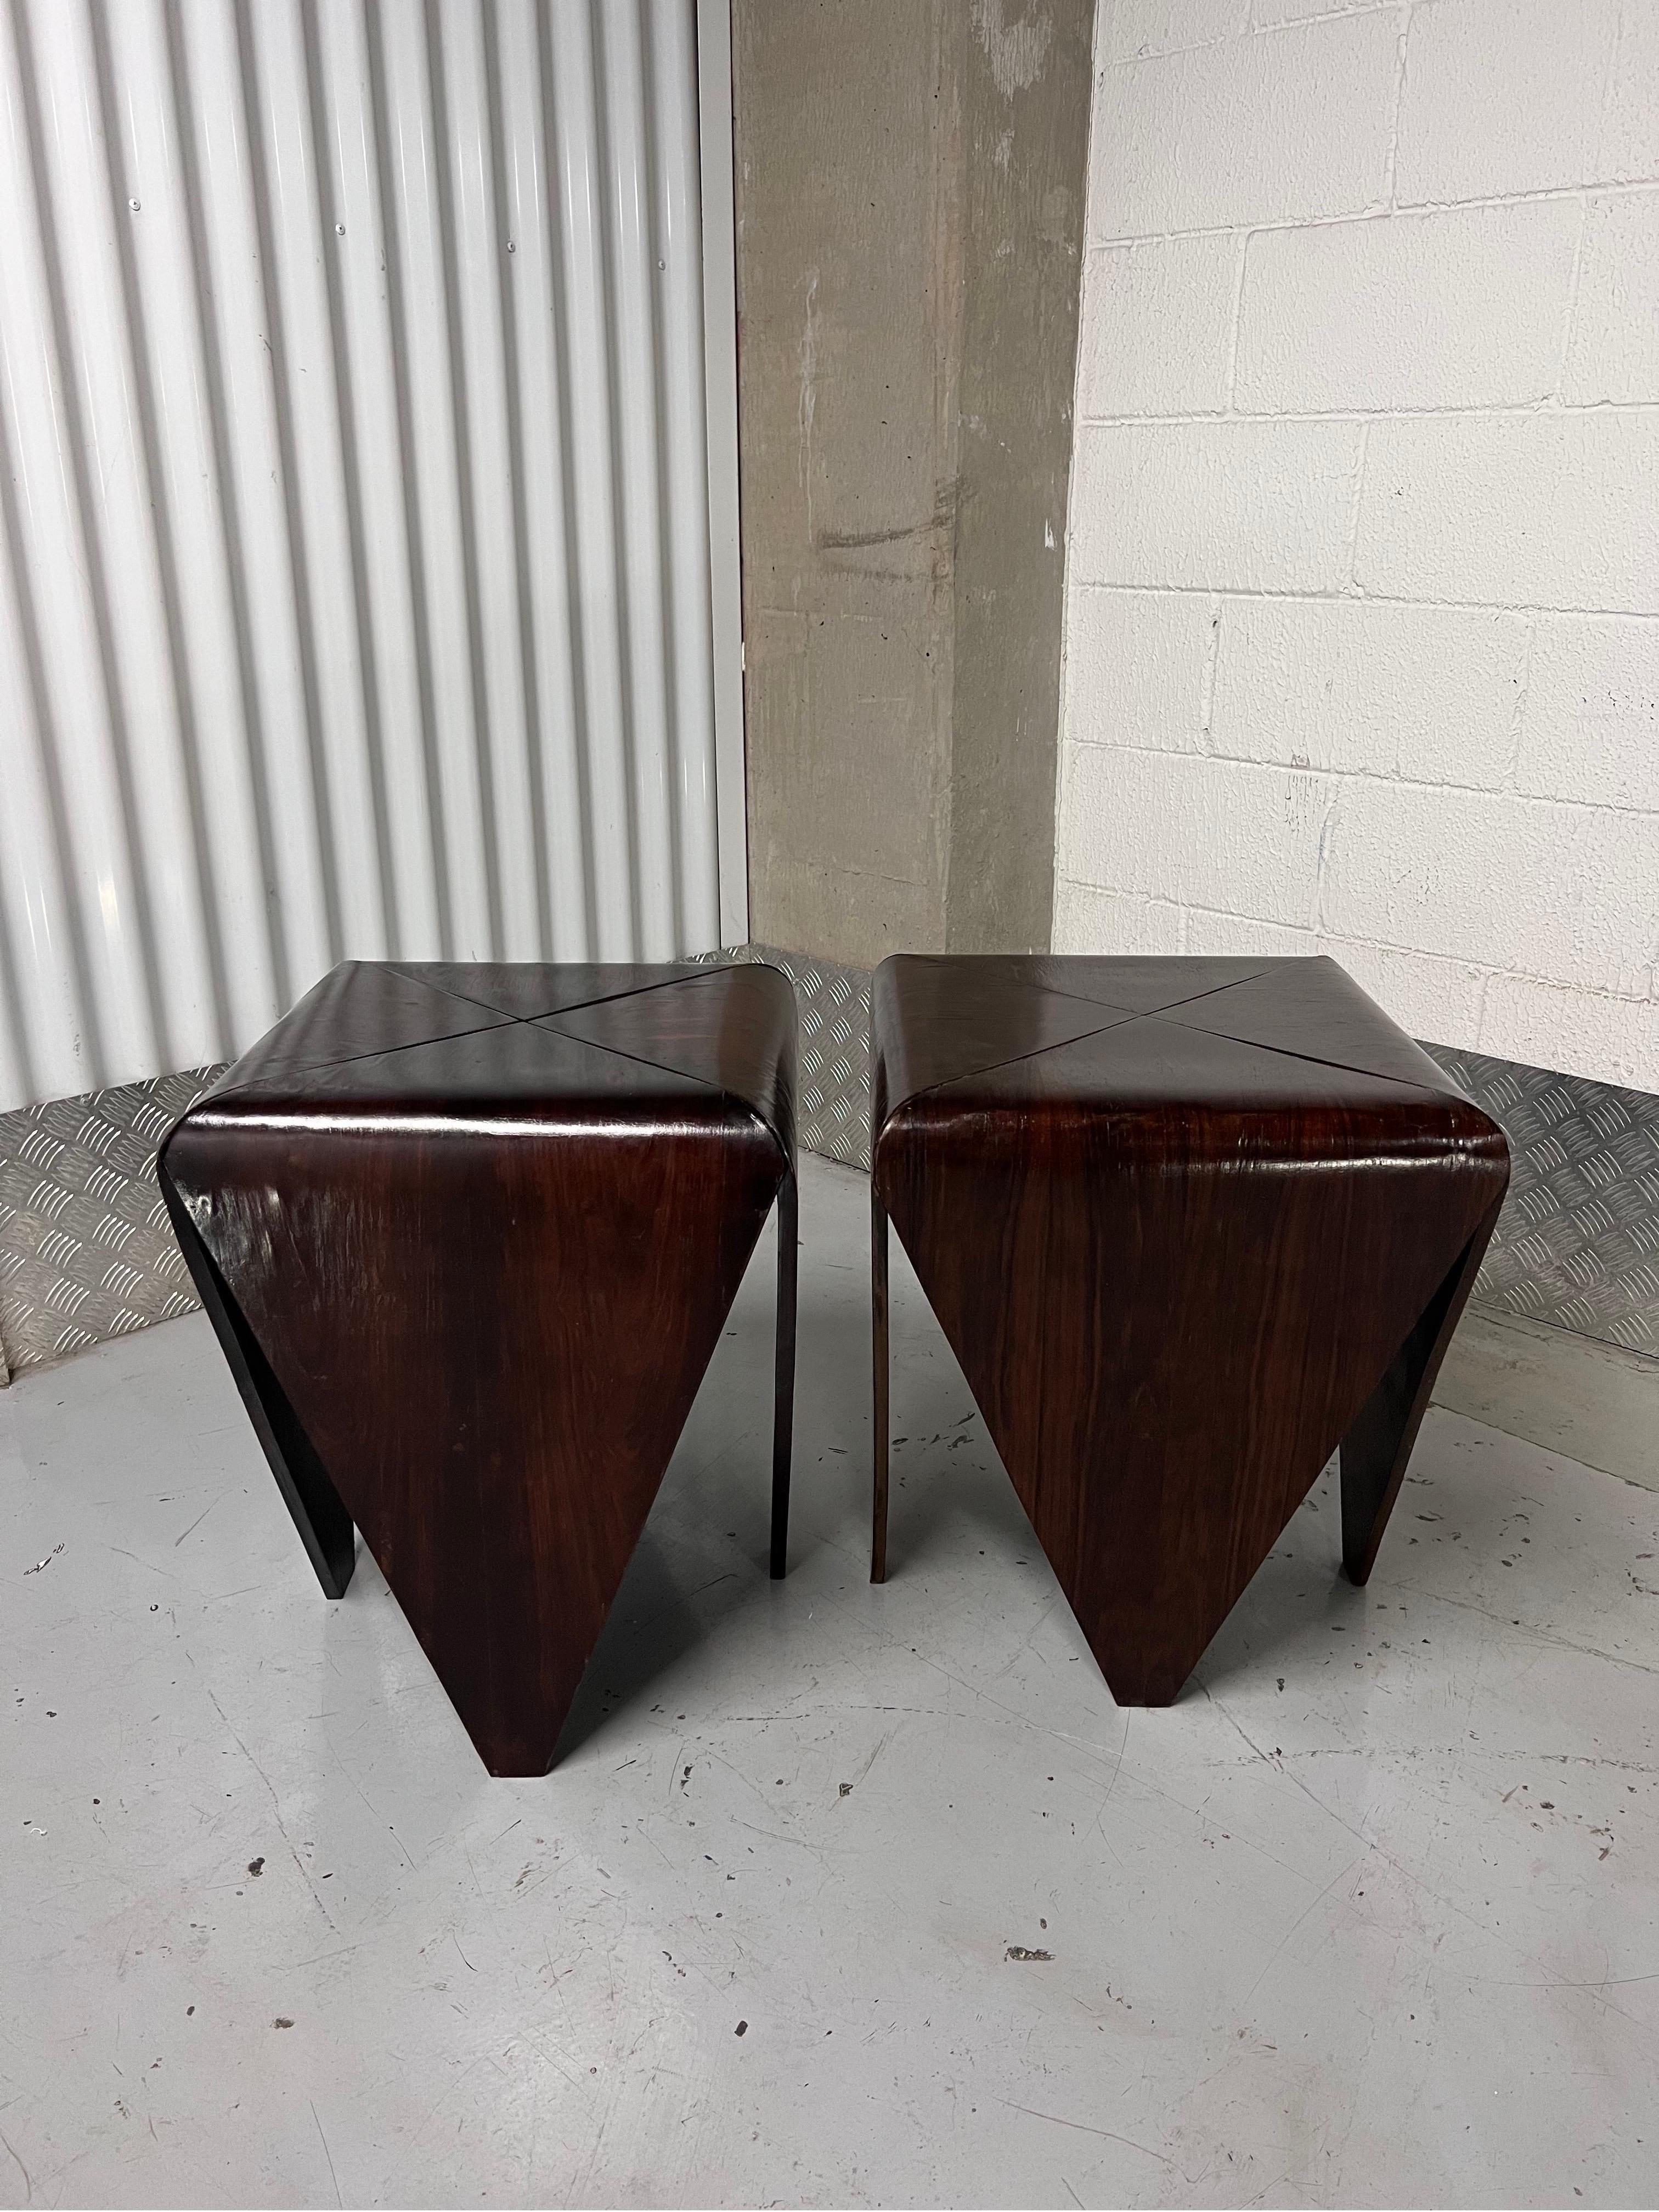 Brazilian Jorge Zalszupin Petalas Side Tables for L'Atelier, 1960s, a Pair